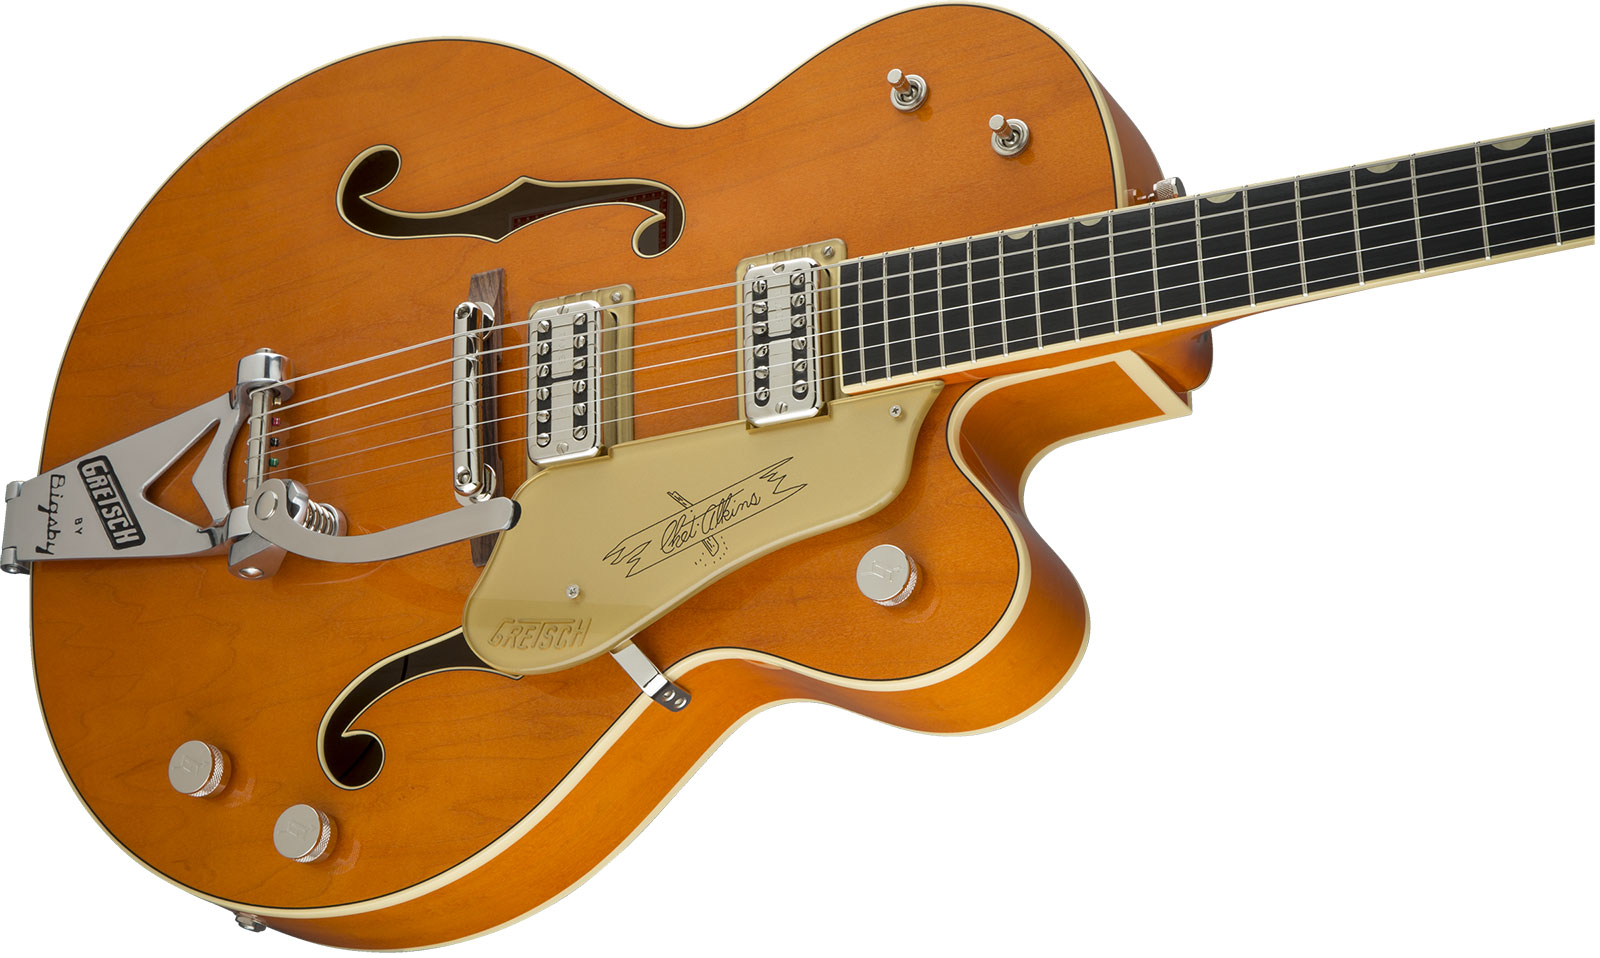 Gretsch Chet Atkins G6120t-59 Vintage Select 1959 Bigsby Pro Jap 2h Tv Jones Trem Eb - Vintage Orange Stain - Hollowbody E-Gitarre - Variation 2